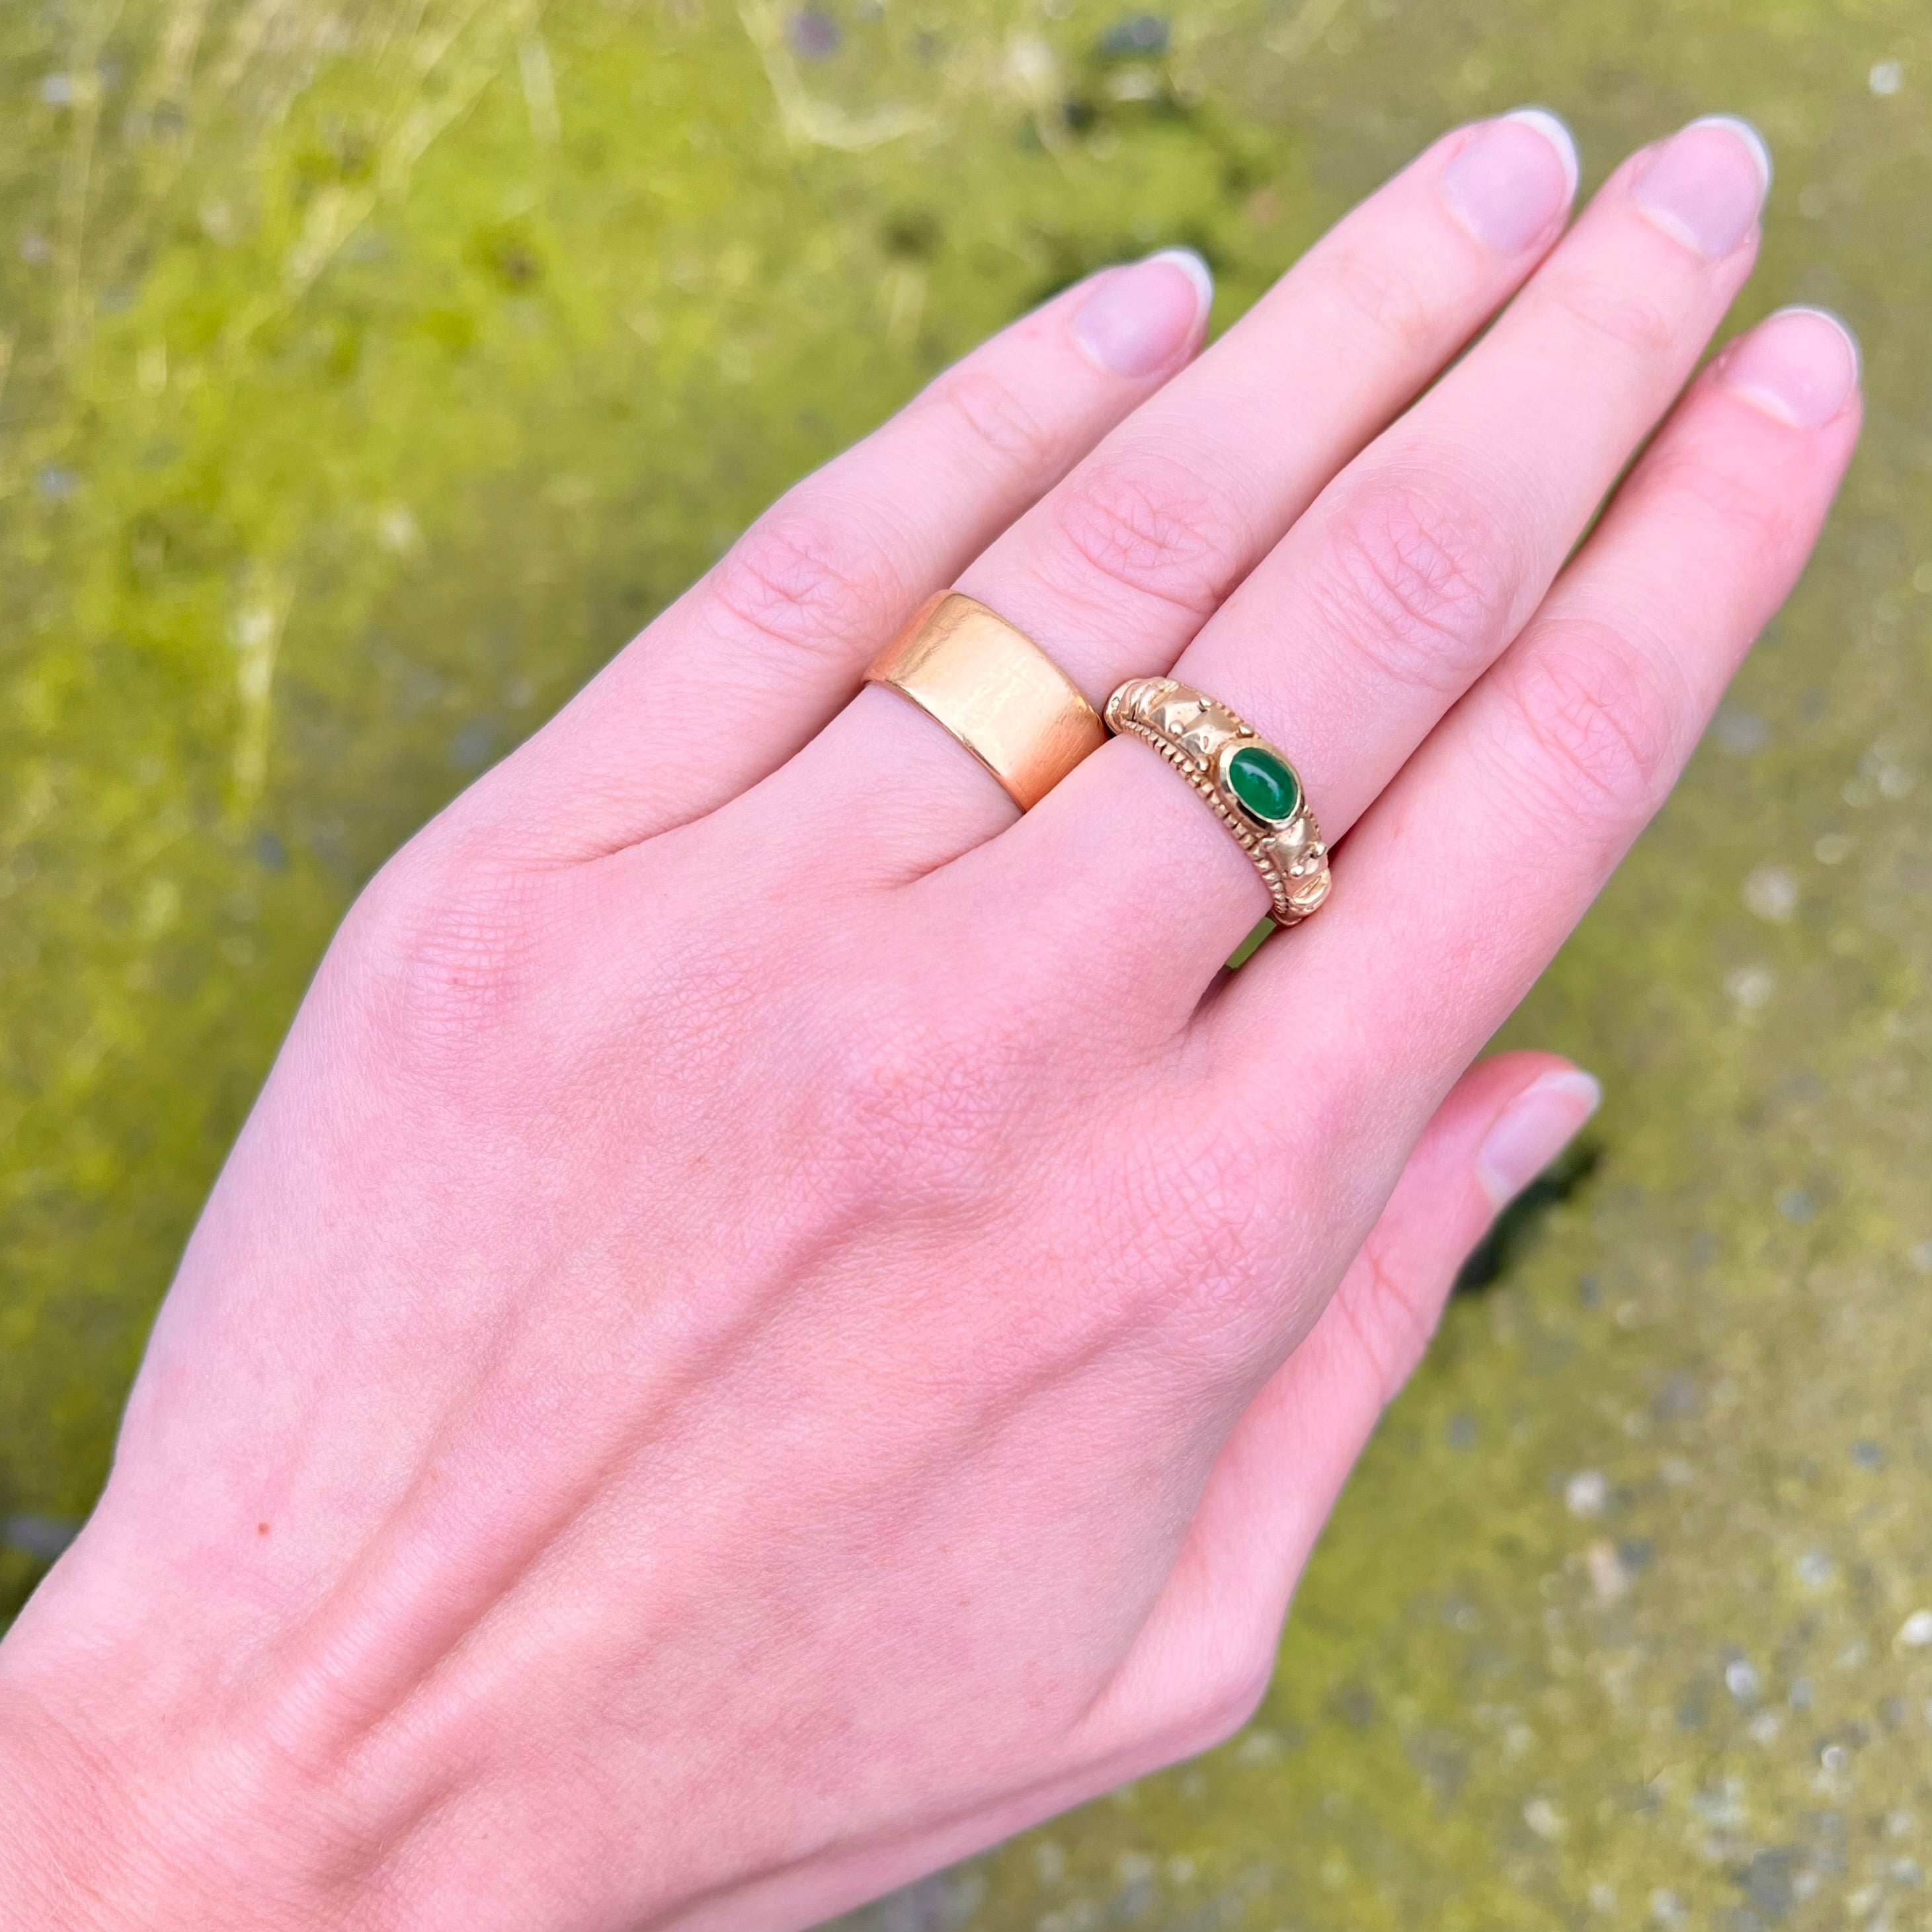 Vintage Artisan 14k Gold Bezel Set Emerald Ring